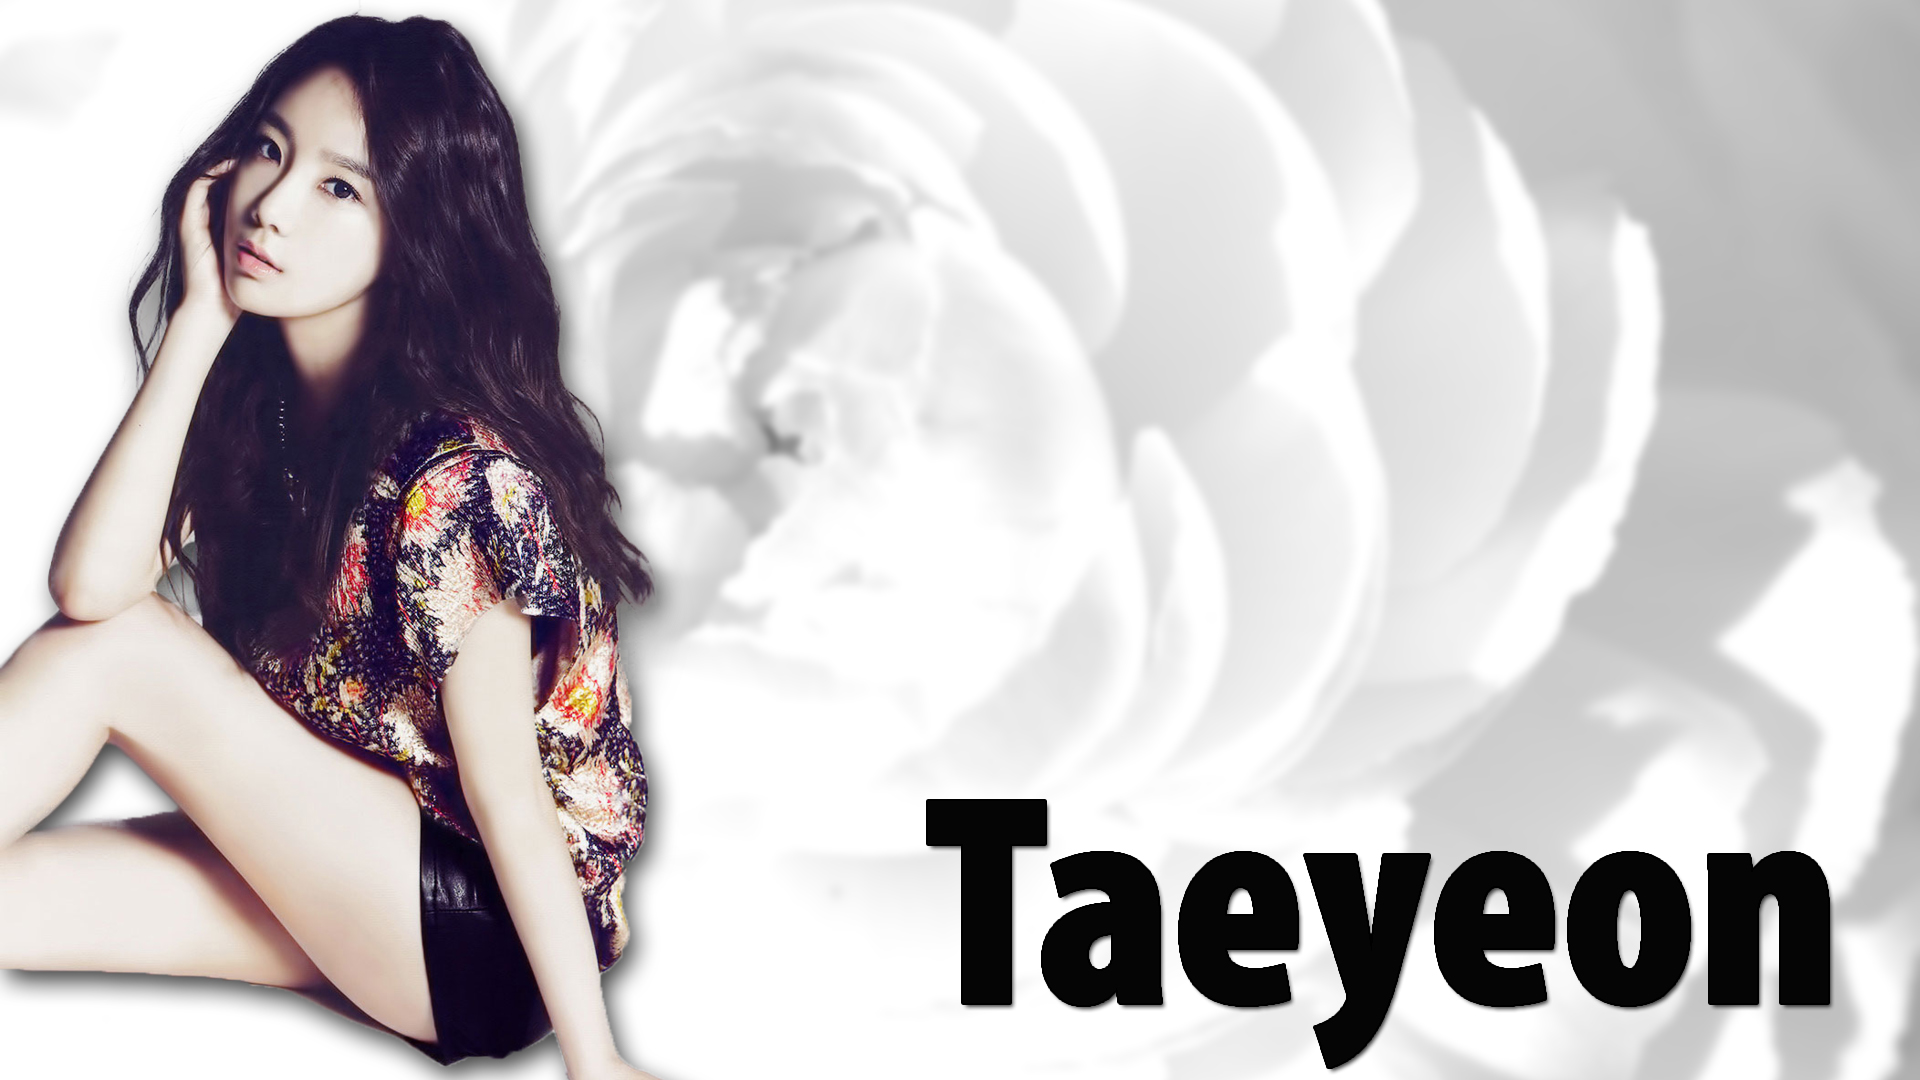 Kim Taeyeon Desktop Wallpapers HD 19202151080 Taeyeon